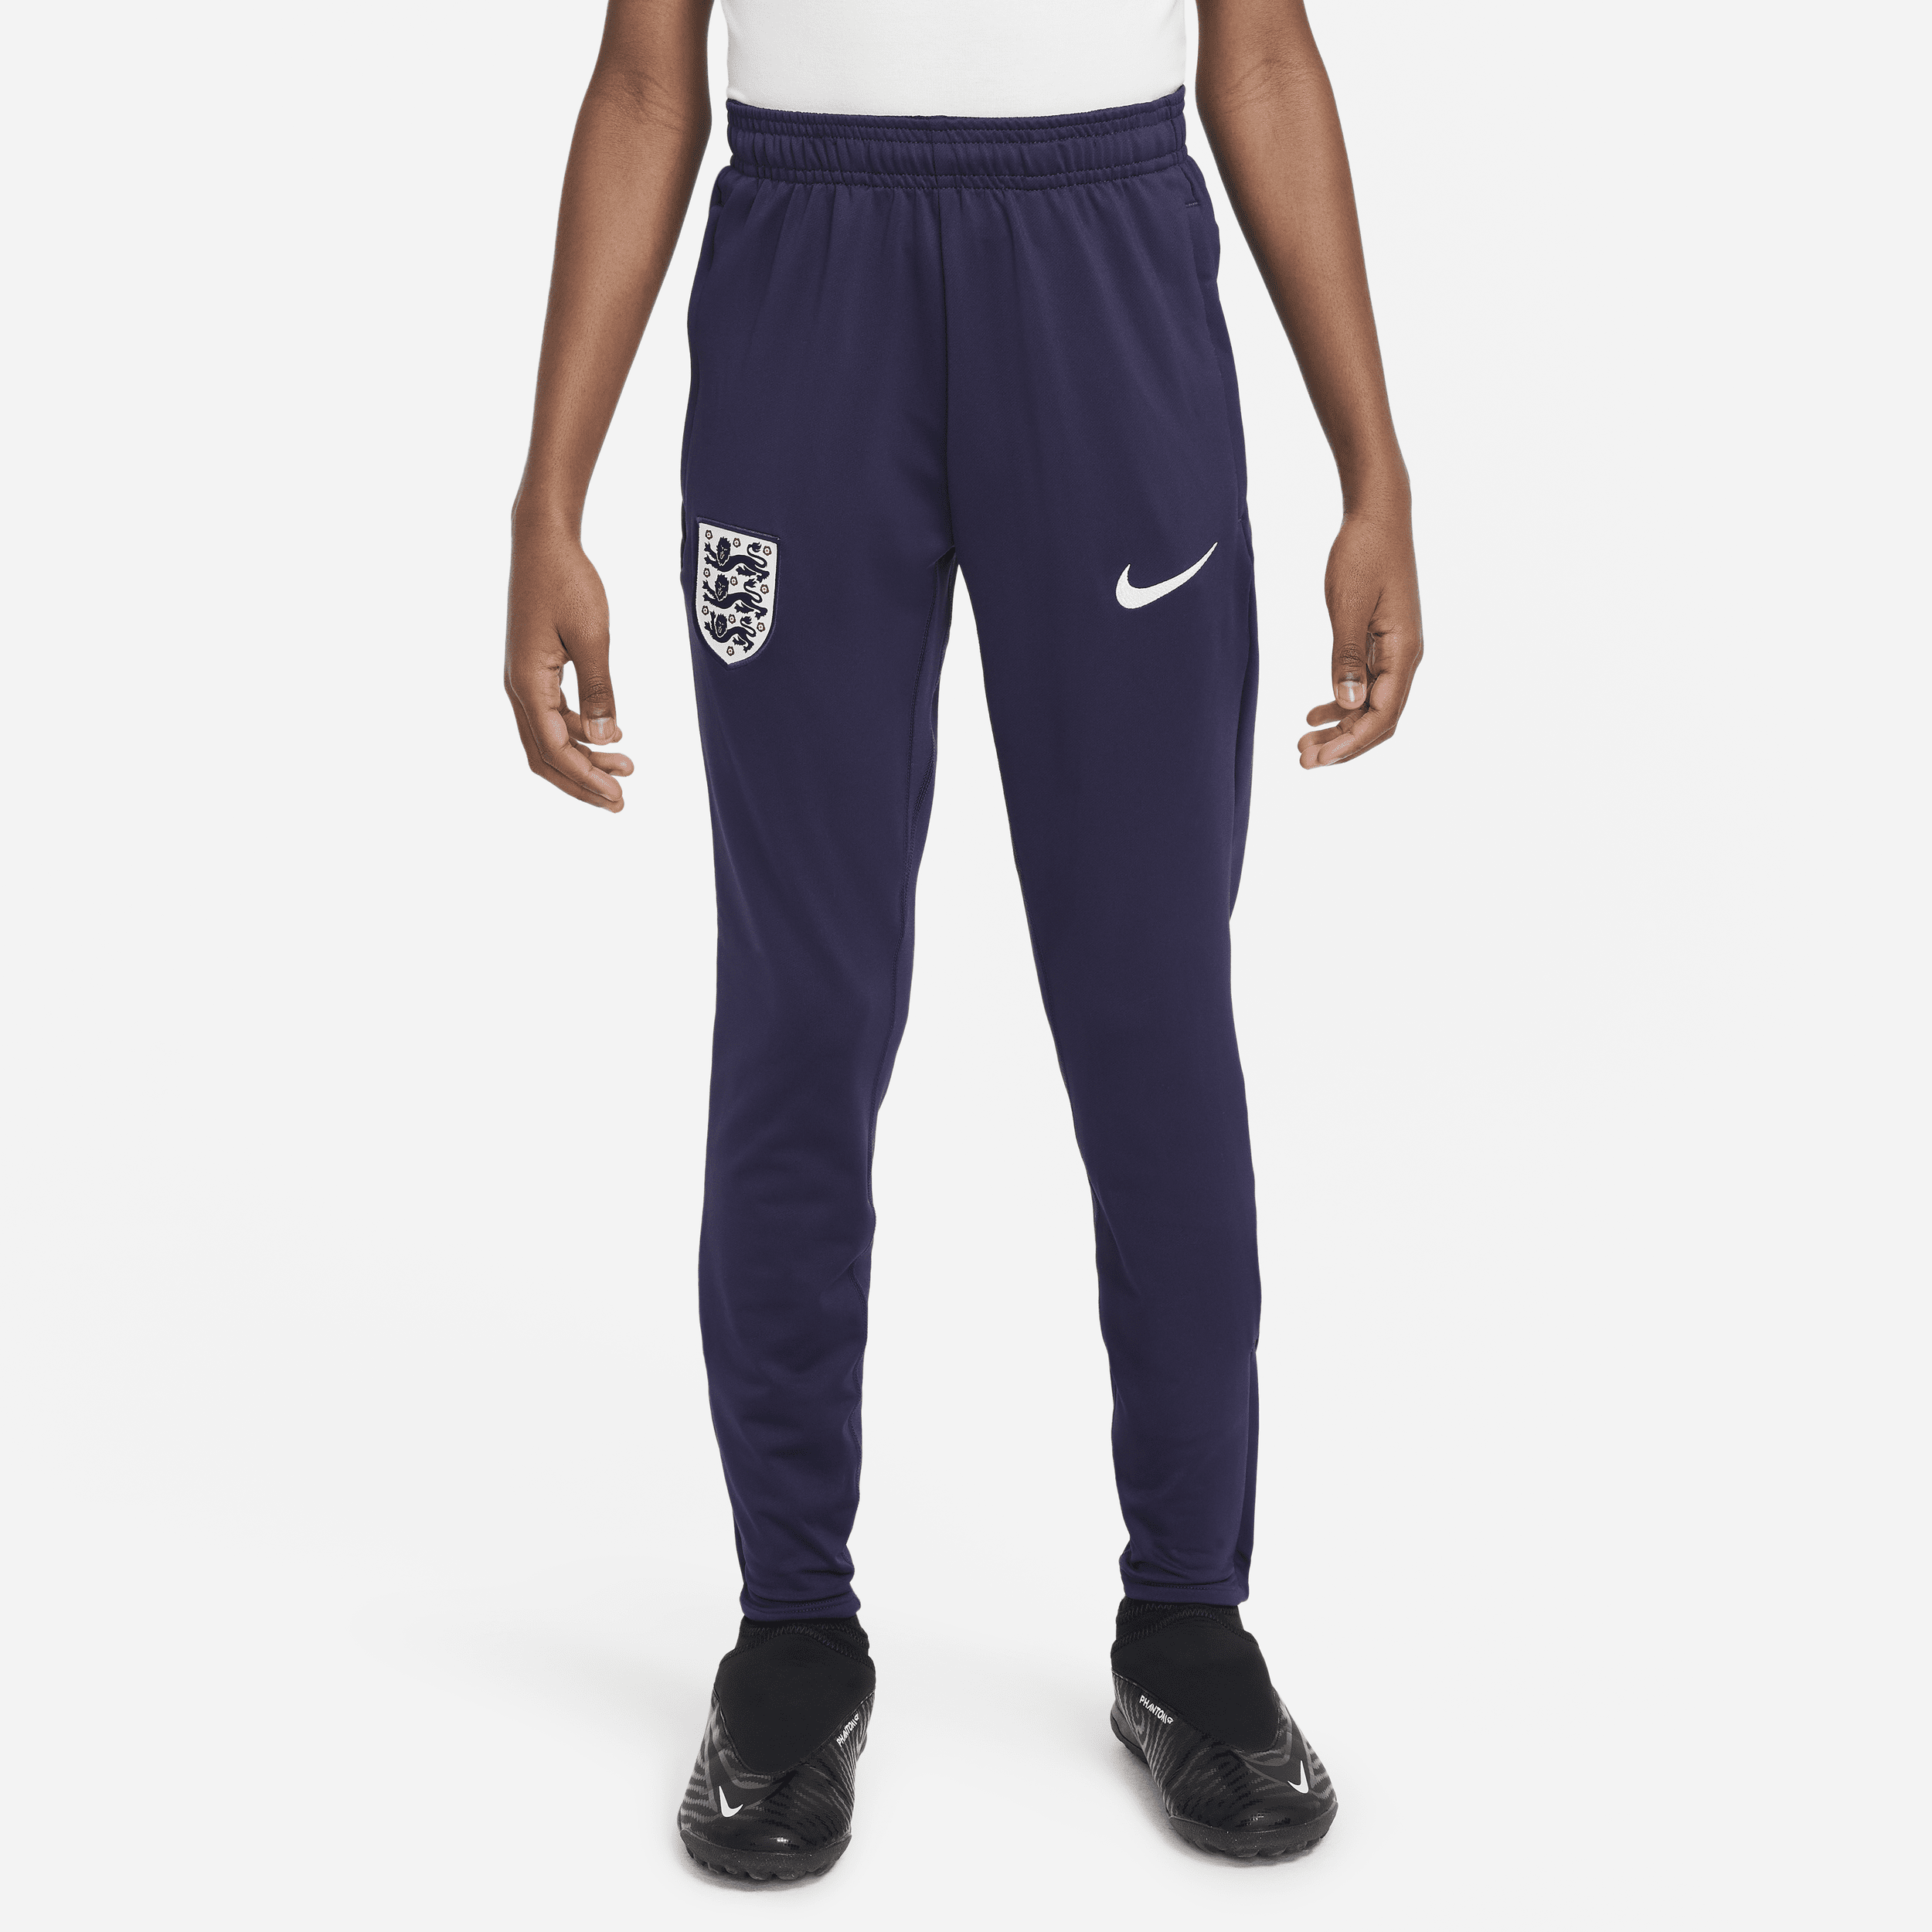 Engeland Strike Nike Dri-FIT knit voetbalbroek voor kids - Paars